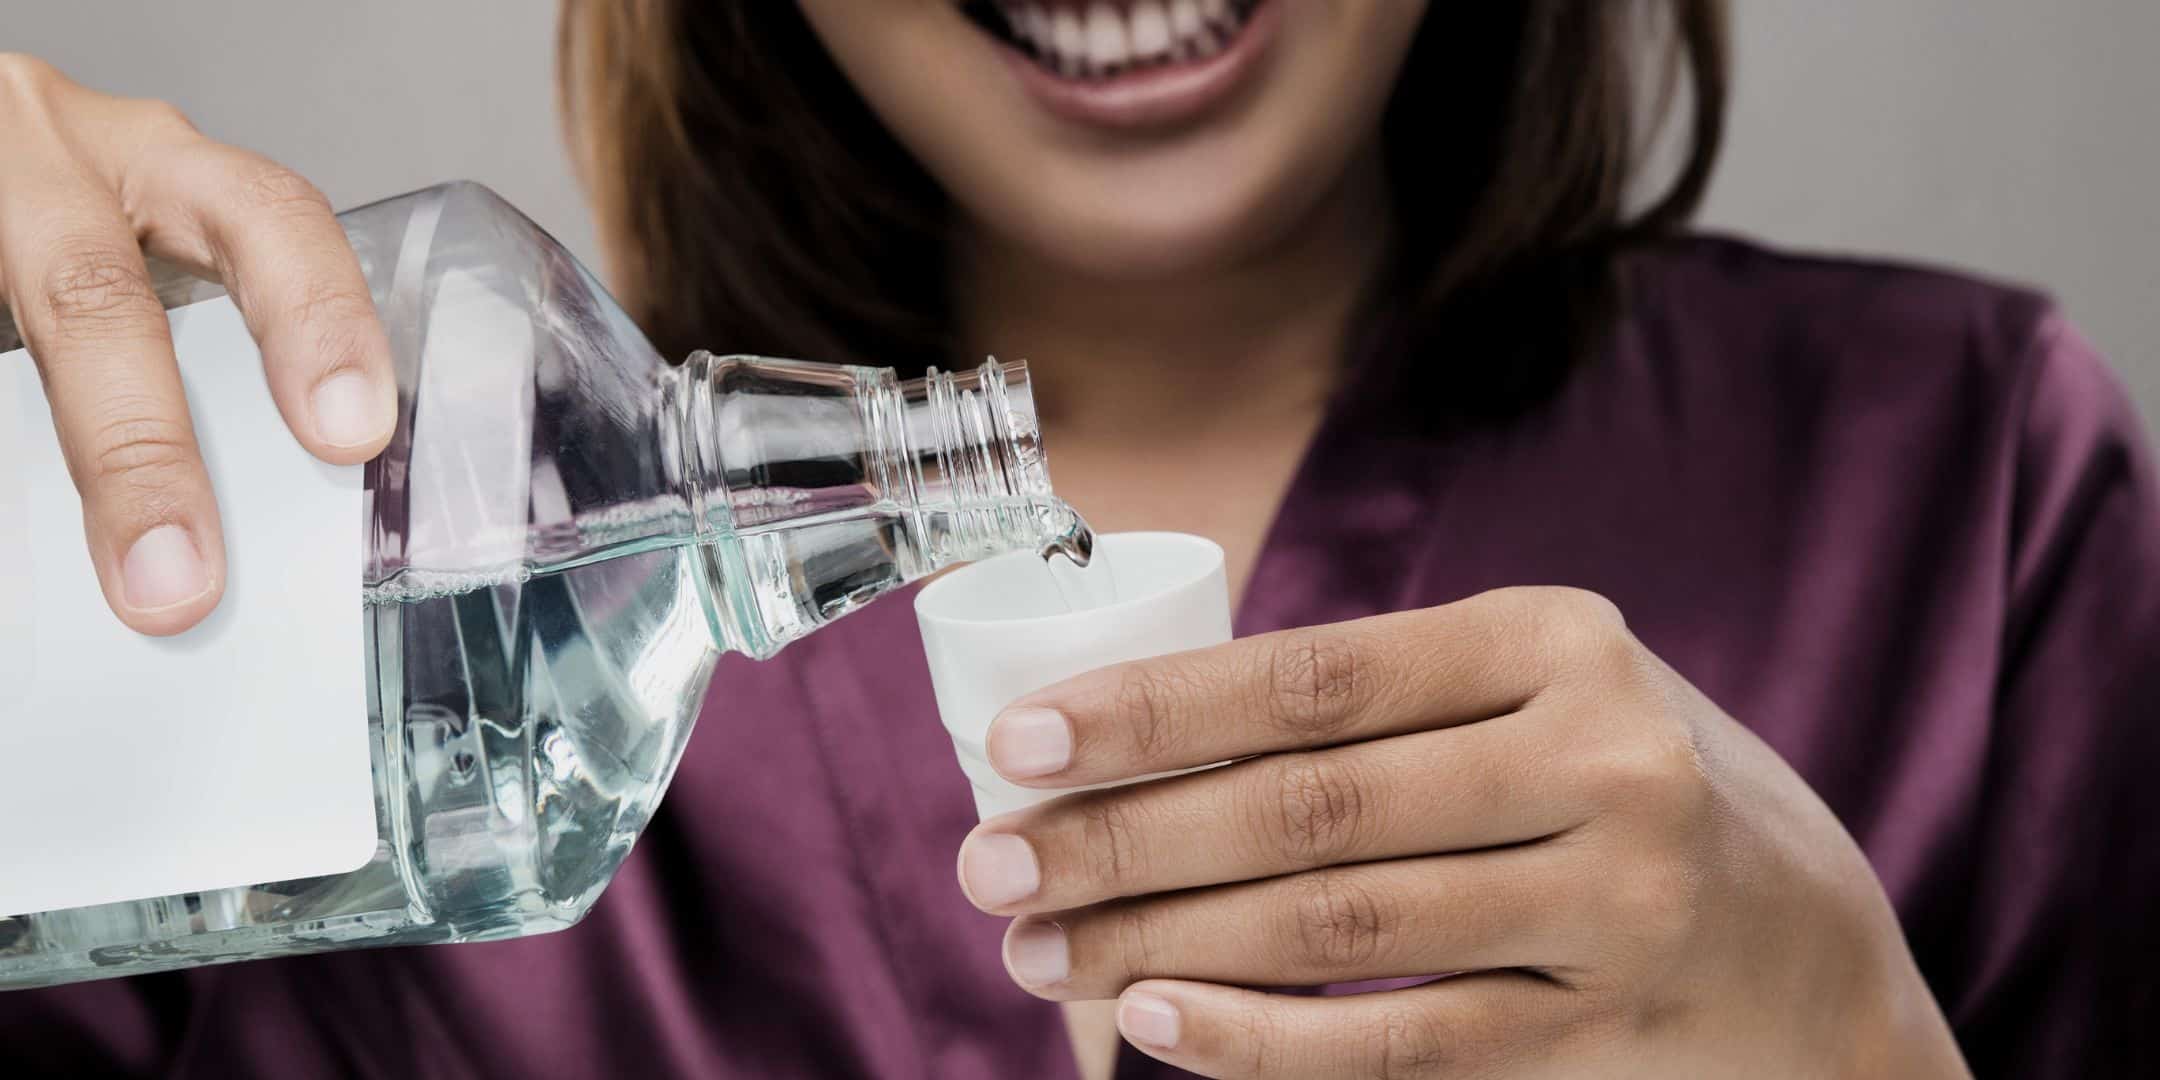 Does Mouthwash for Drug Test Work?